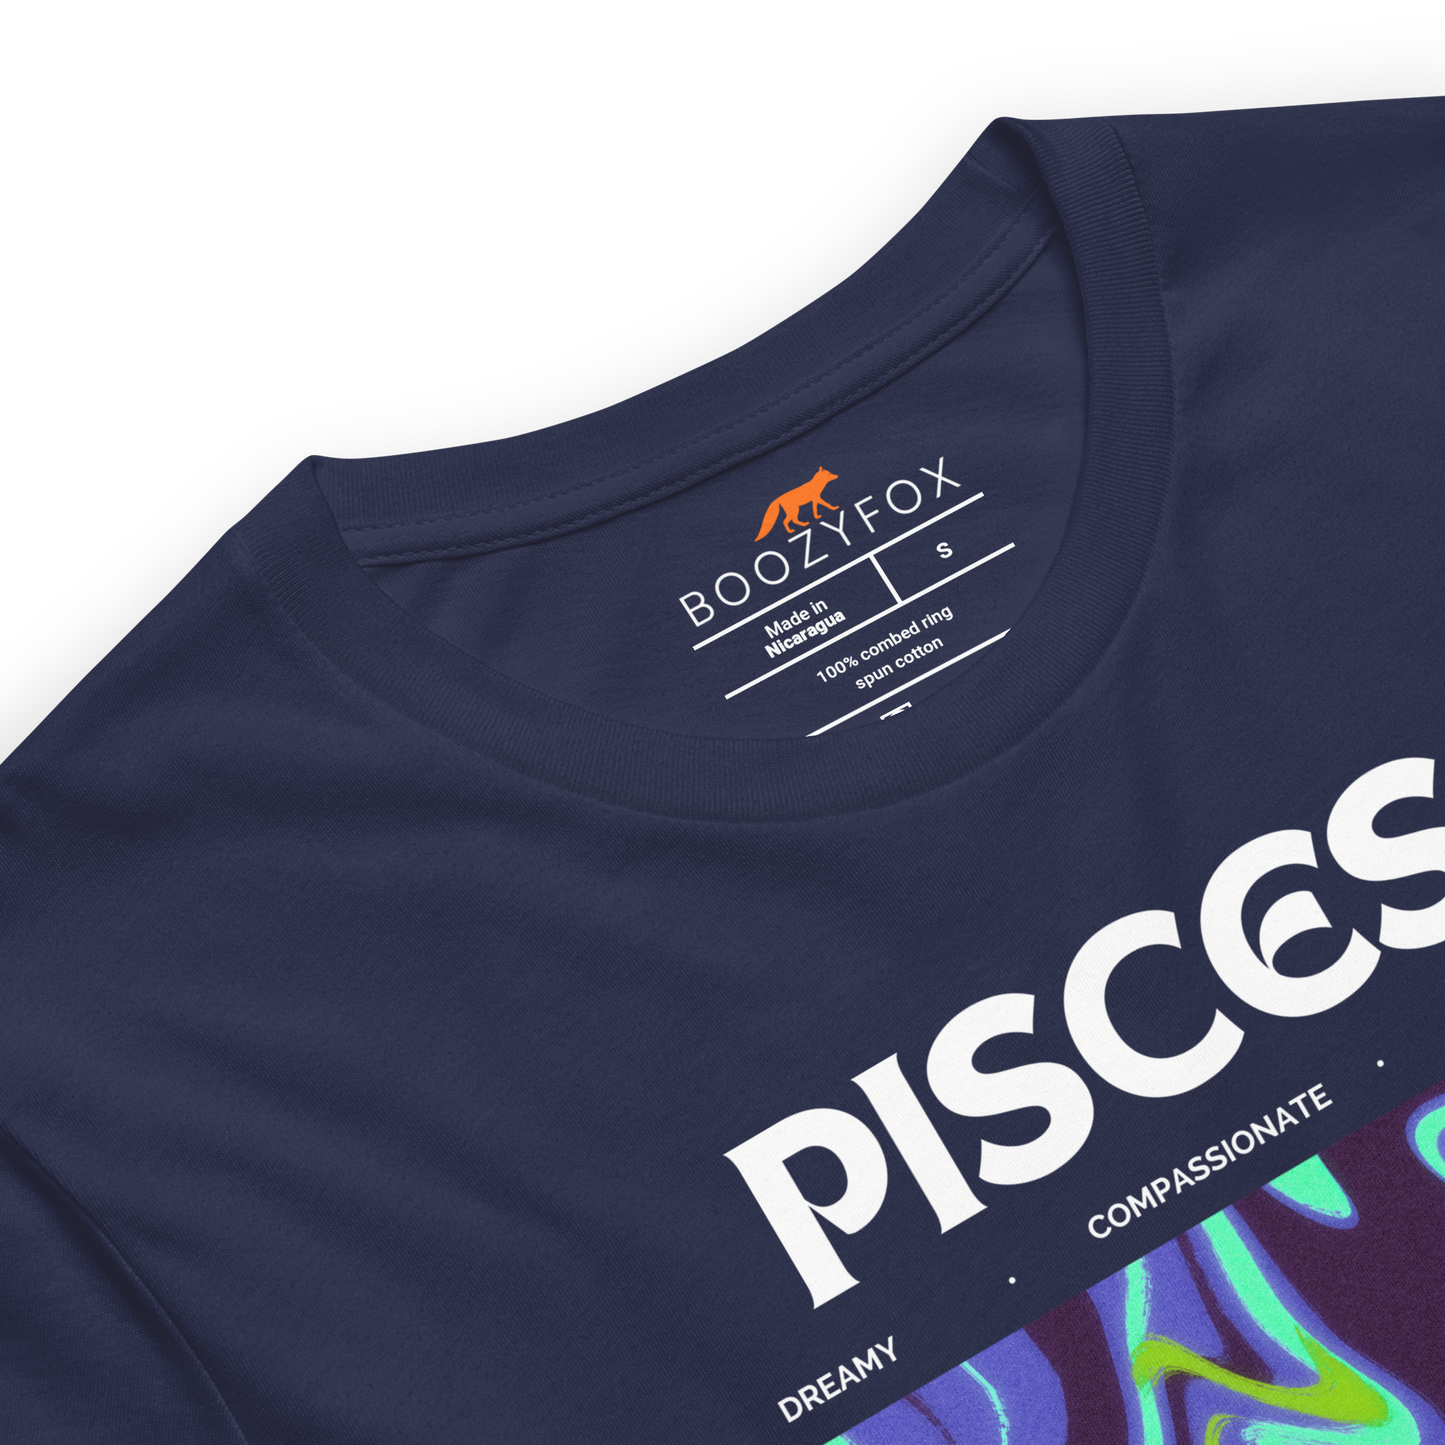 Pisces Premium T-Shirt